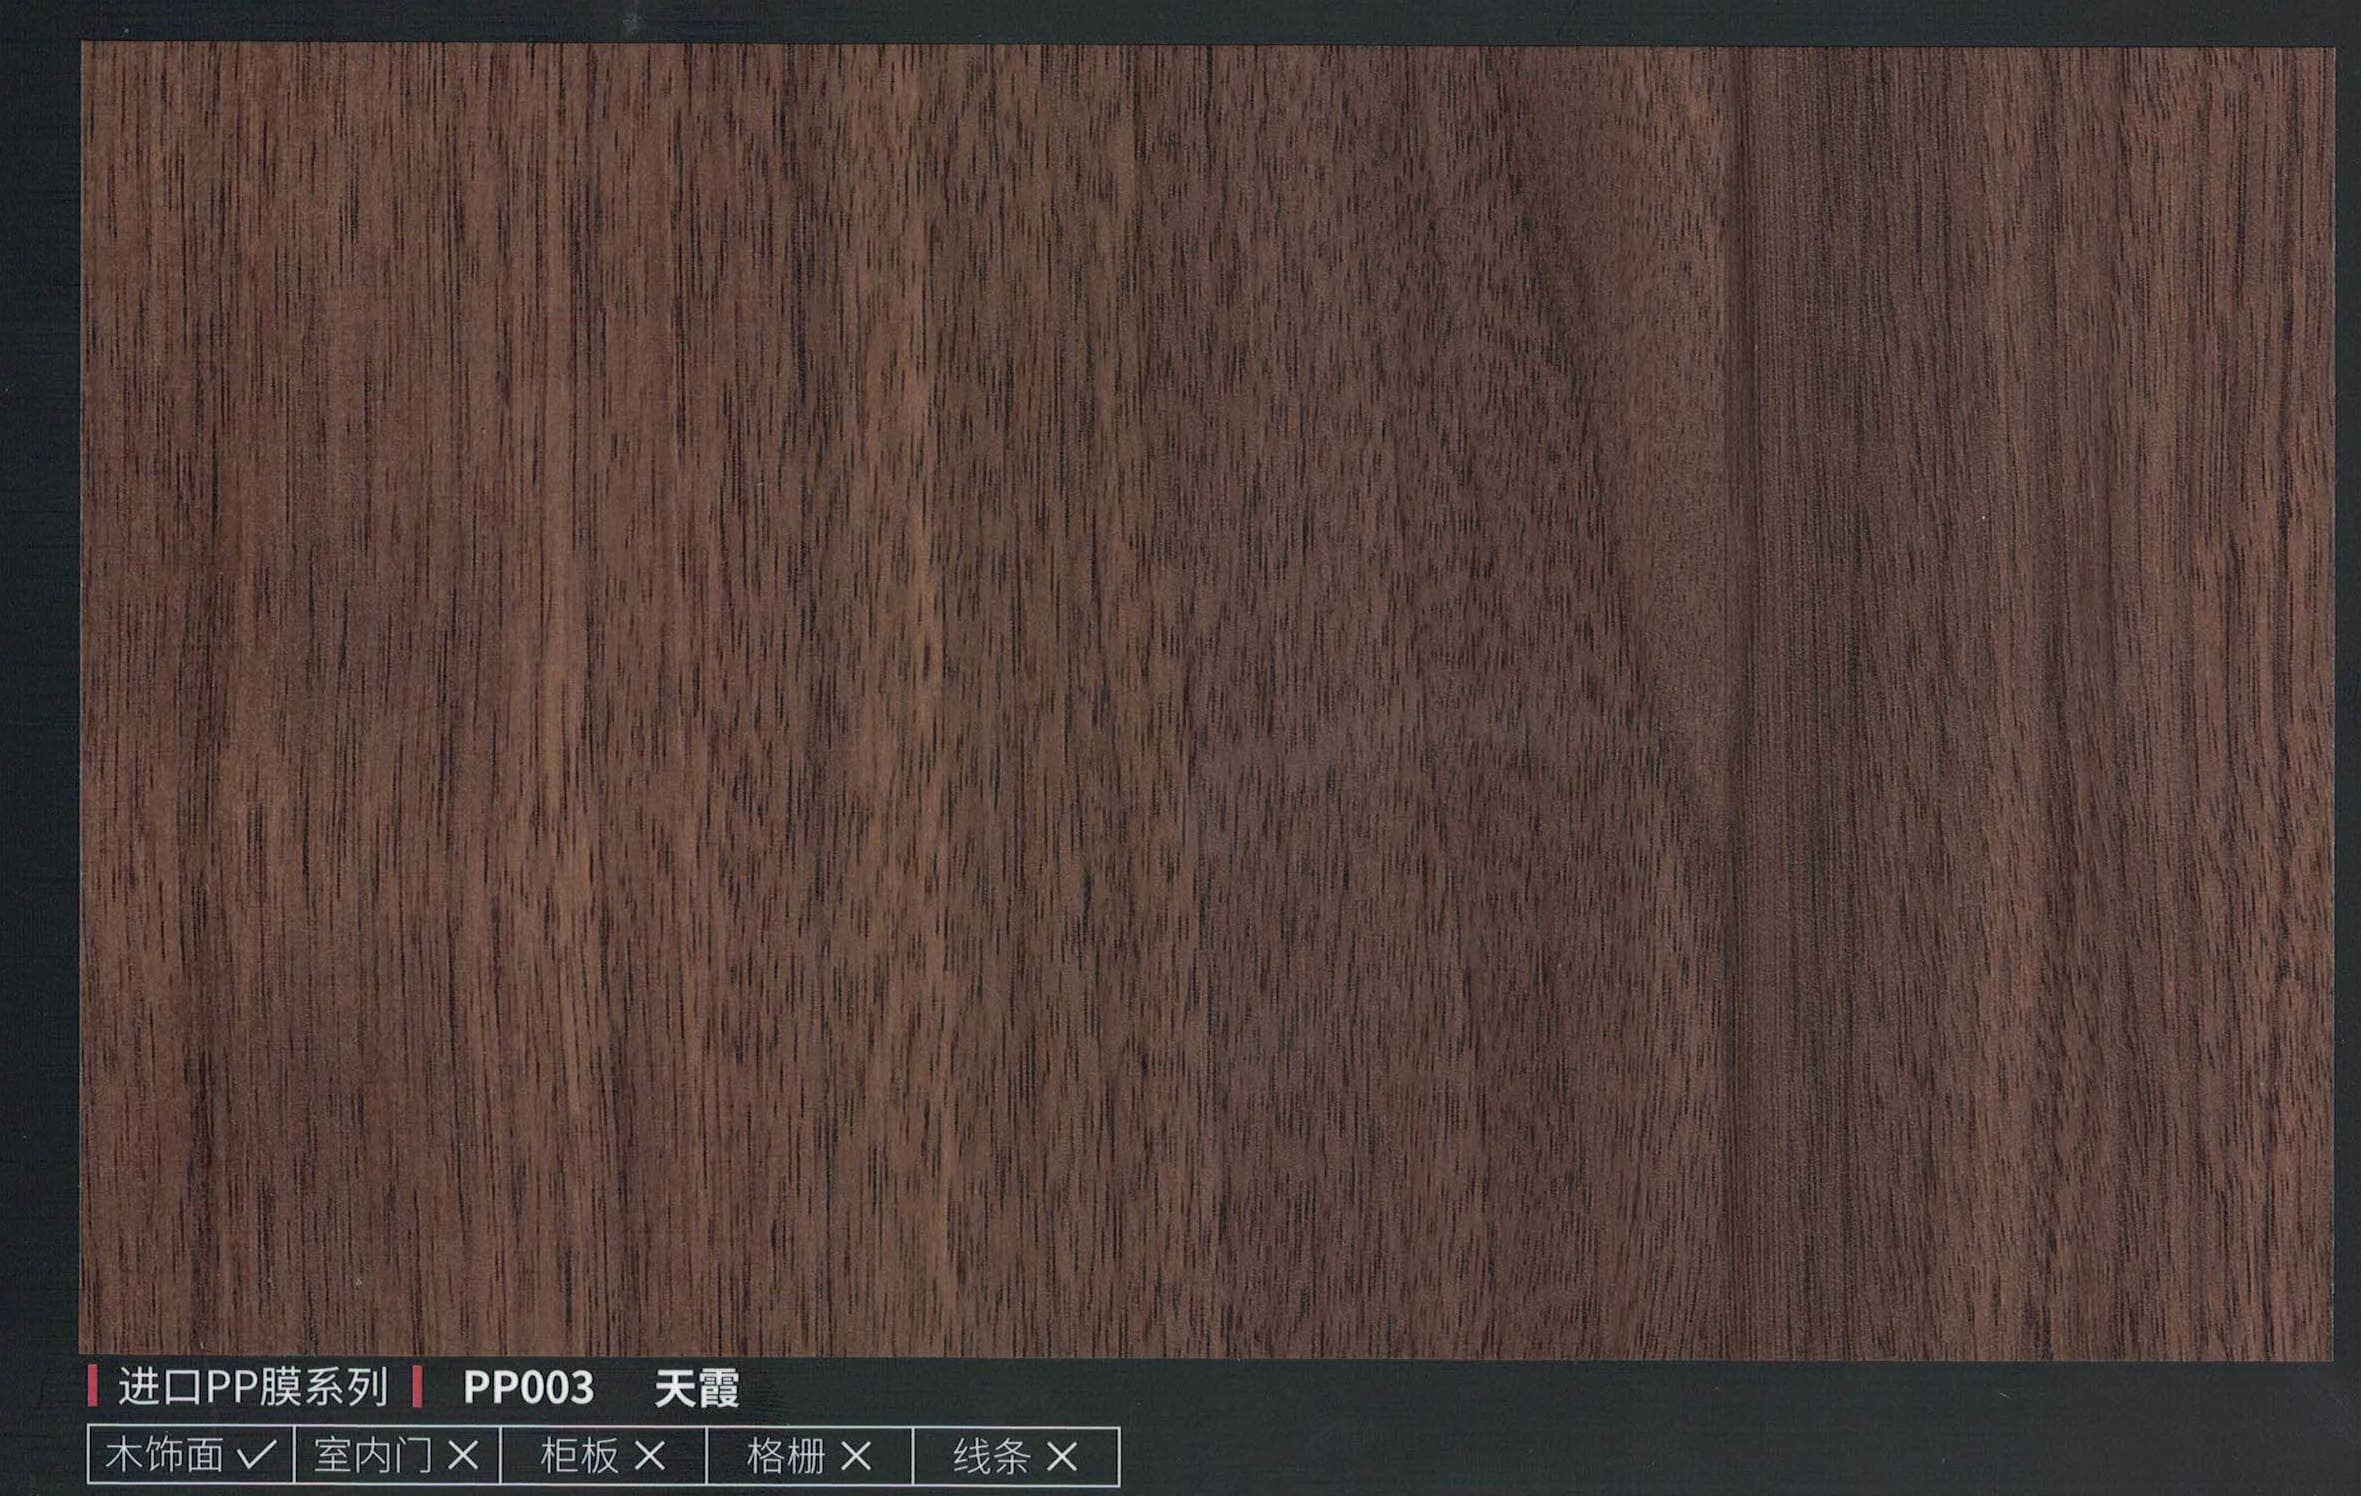 Бамбуковая панель PP003, 1200*2800*8мм, теснение дерева, темно-коричневый